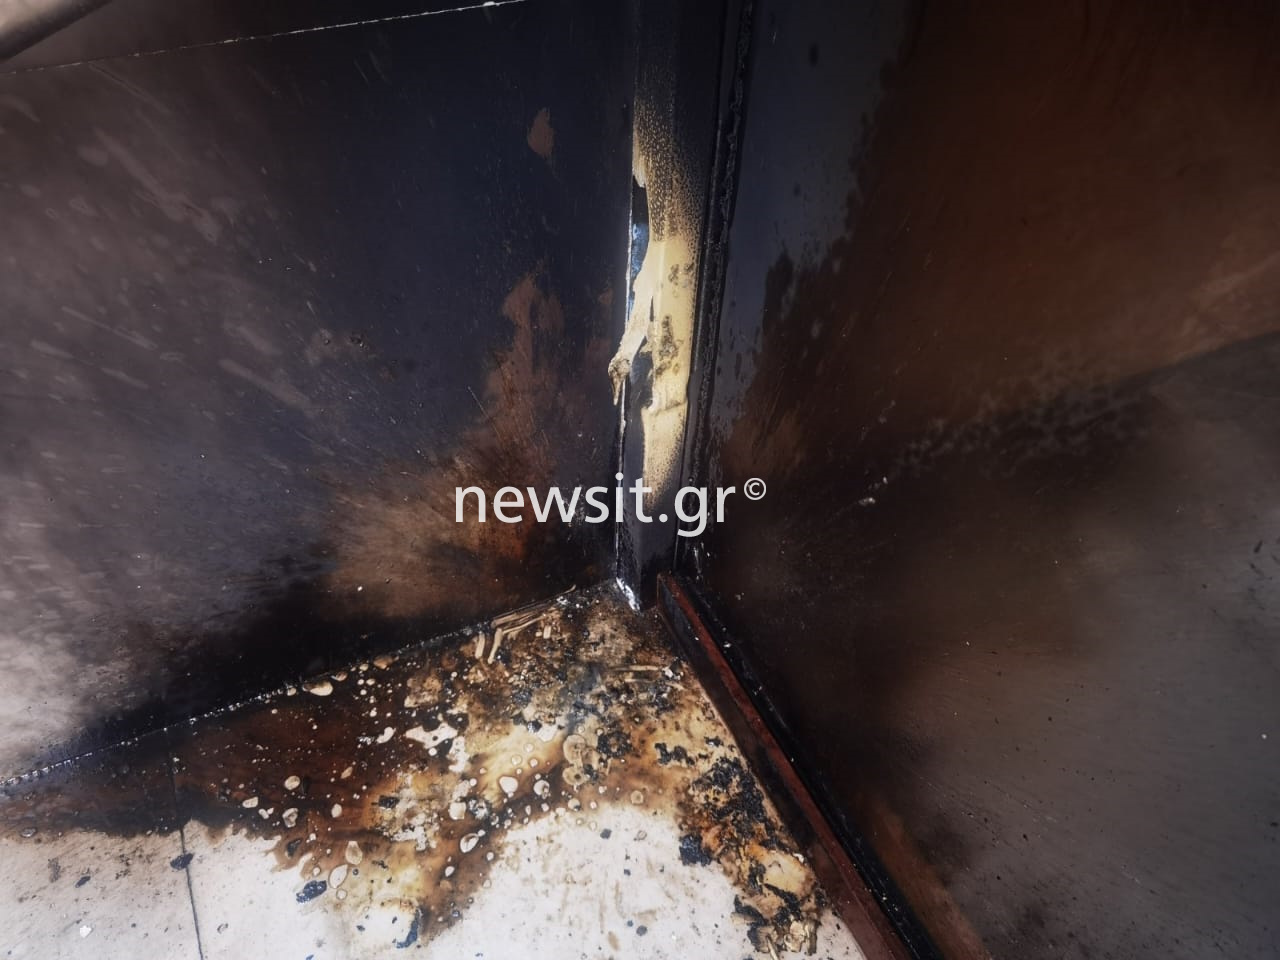 Εξάρχεια: Επίθεση με βόμβες μολότοφ κατά διμοιρίας των ΜΑΤ – Έκρηξη σε πολυκατοικία στου Γκύζη 13